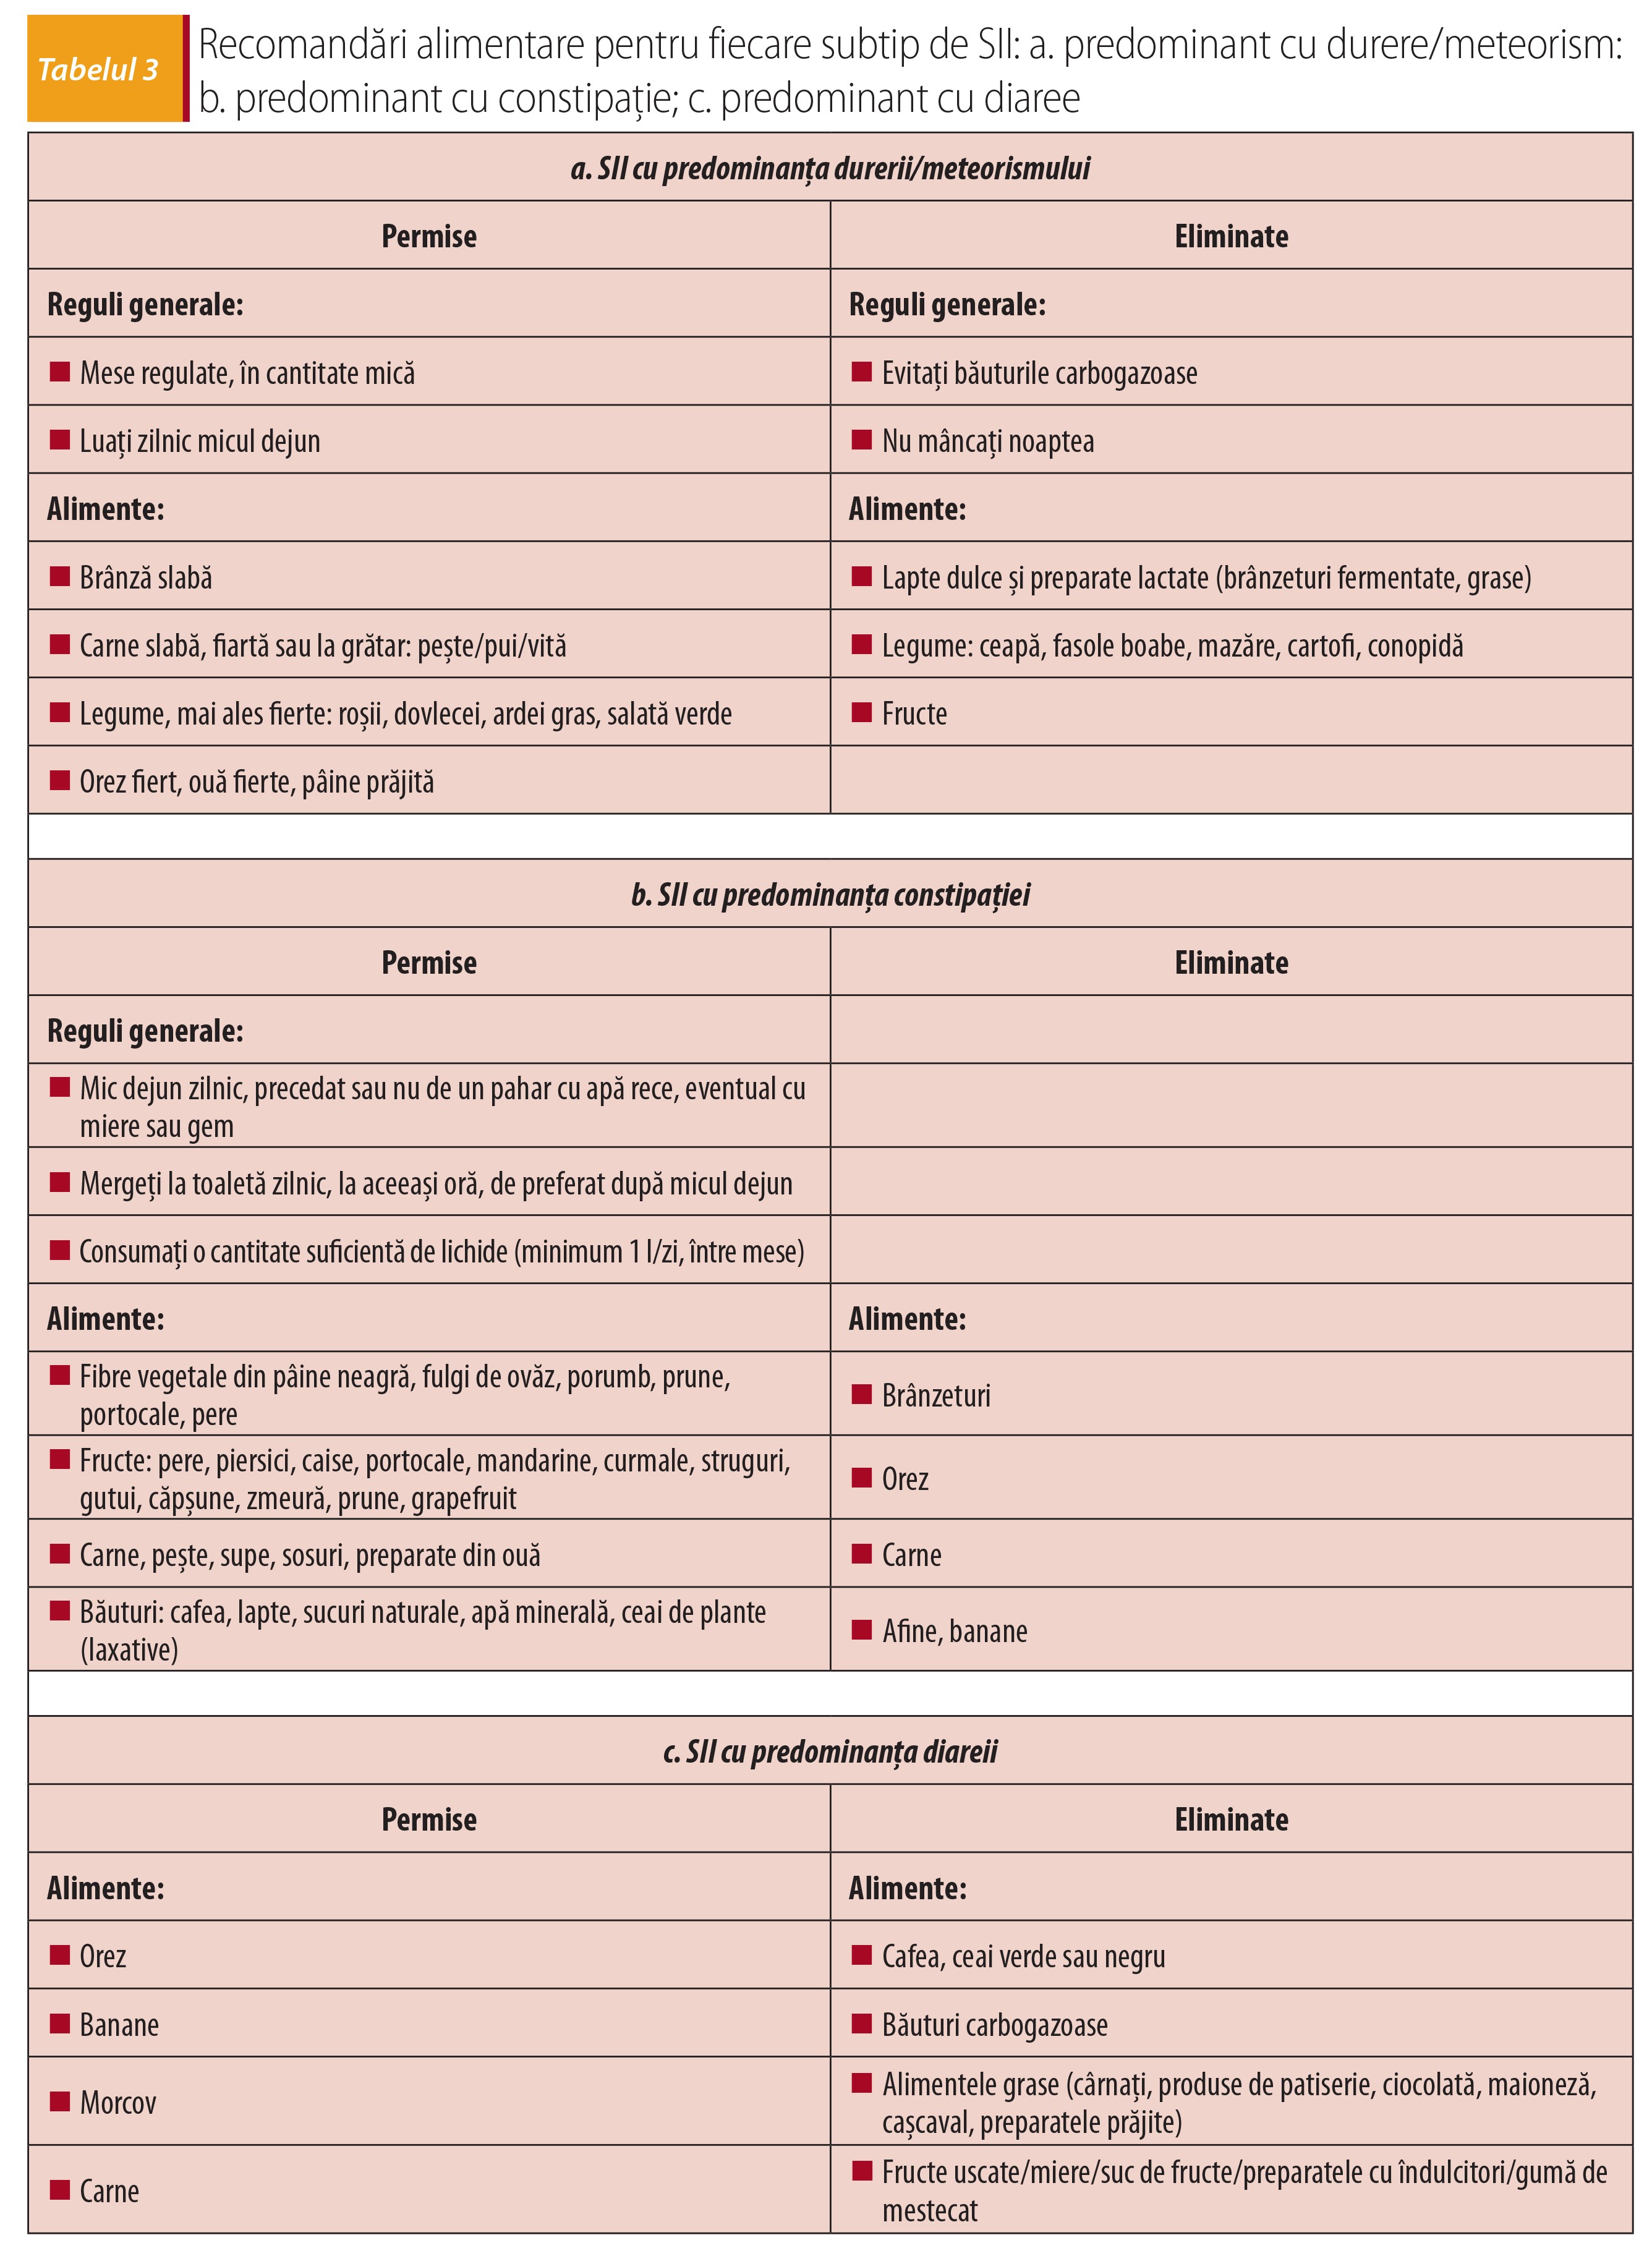 Tabelul 3; Recomandări alimentare pentru fiecare subtip de SII a predominant cu durere meteorism b predominant cu constipație; c predominant cu diaree